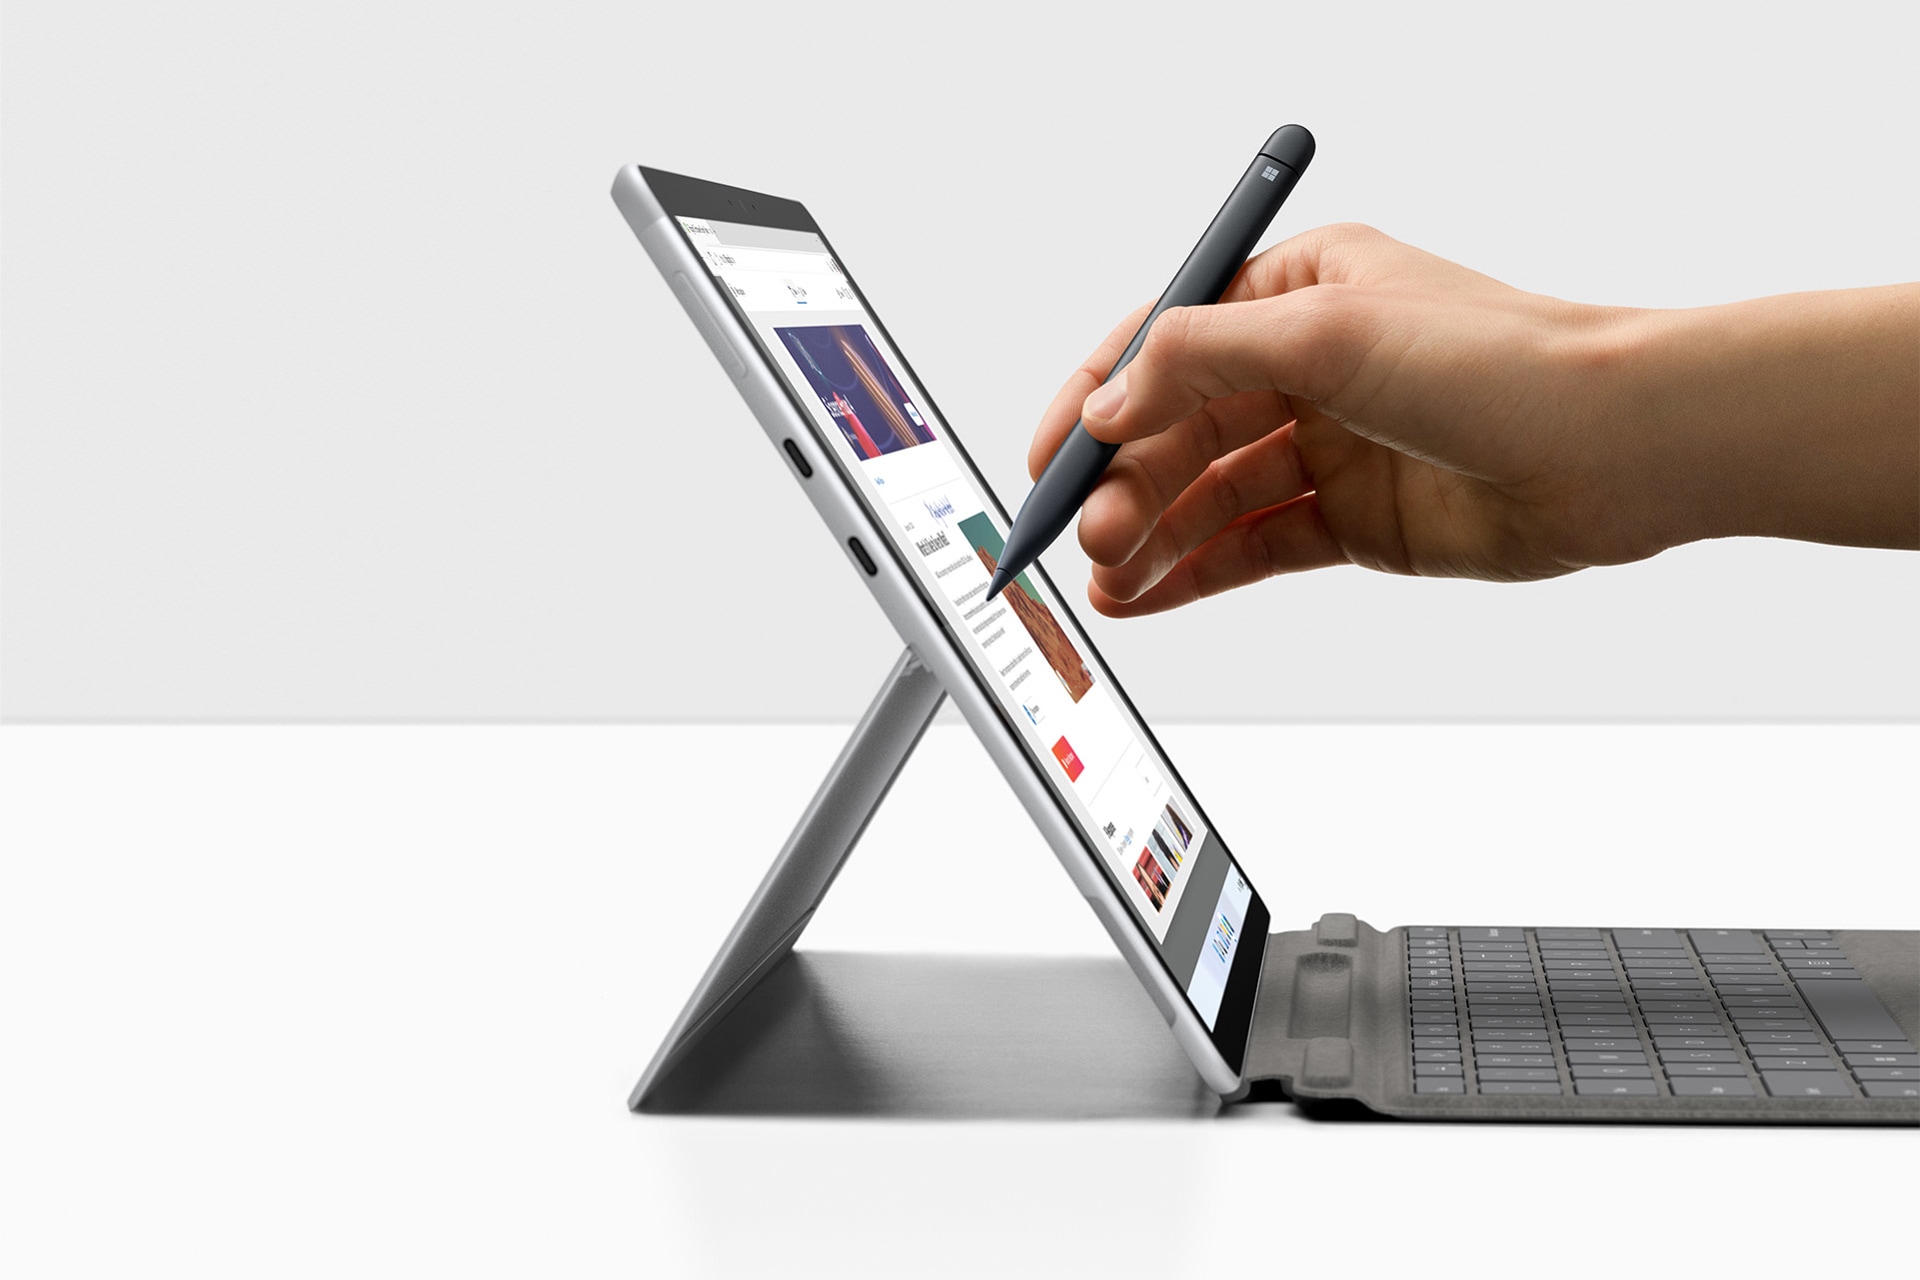 Surface 펜과 함께 사용 중인 Surface Pro X